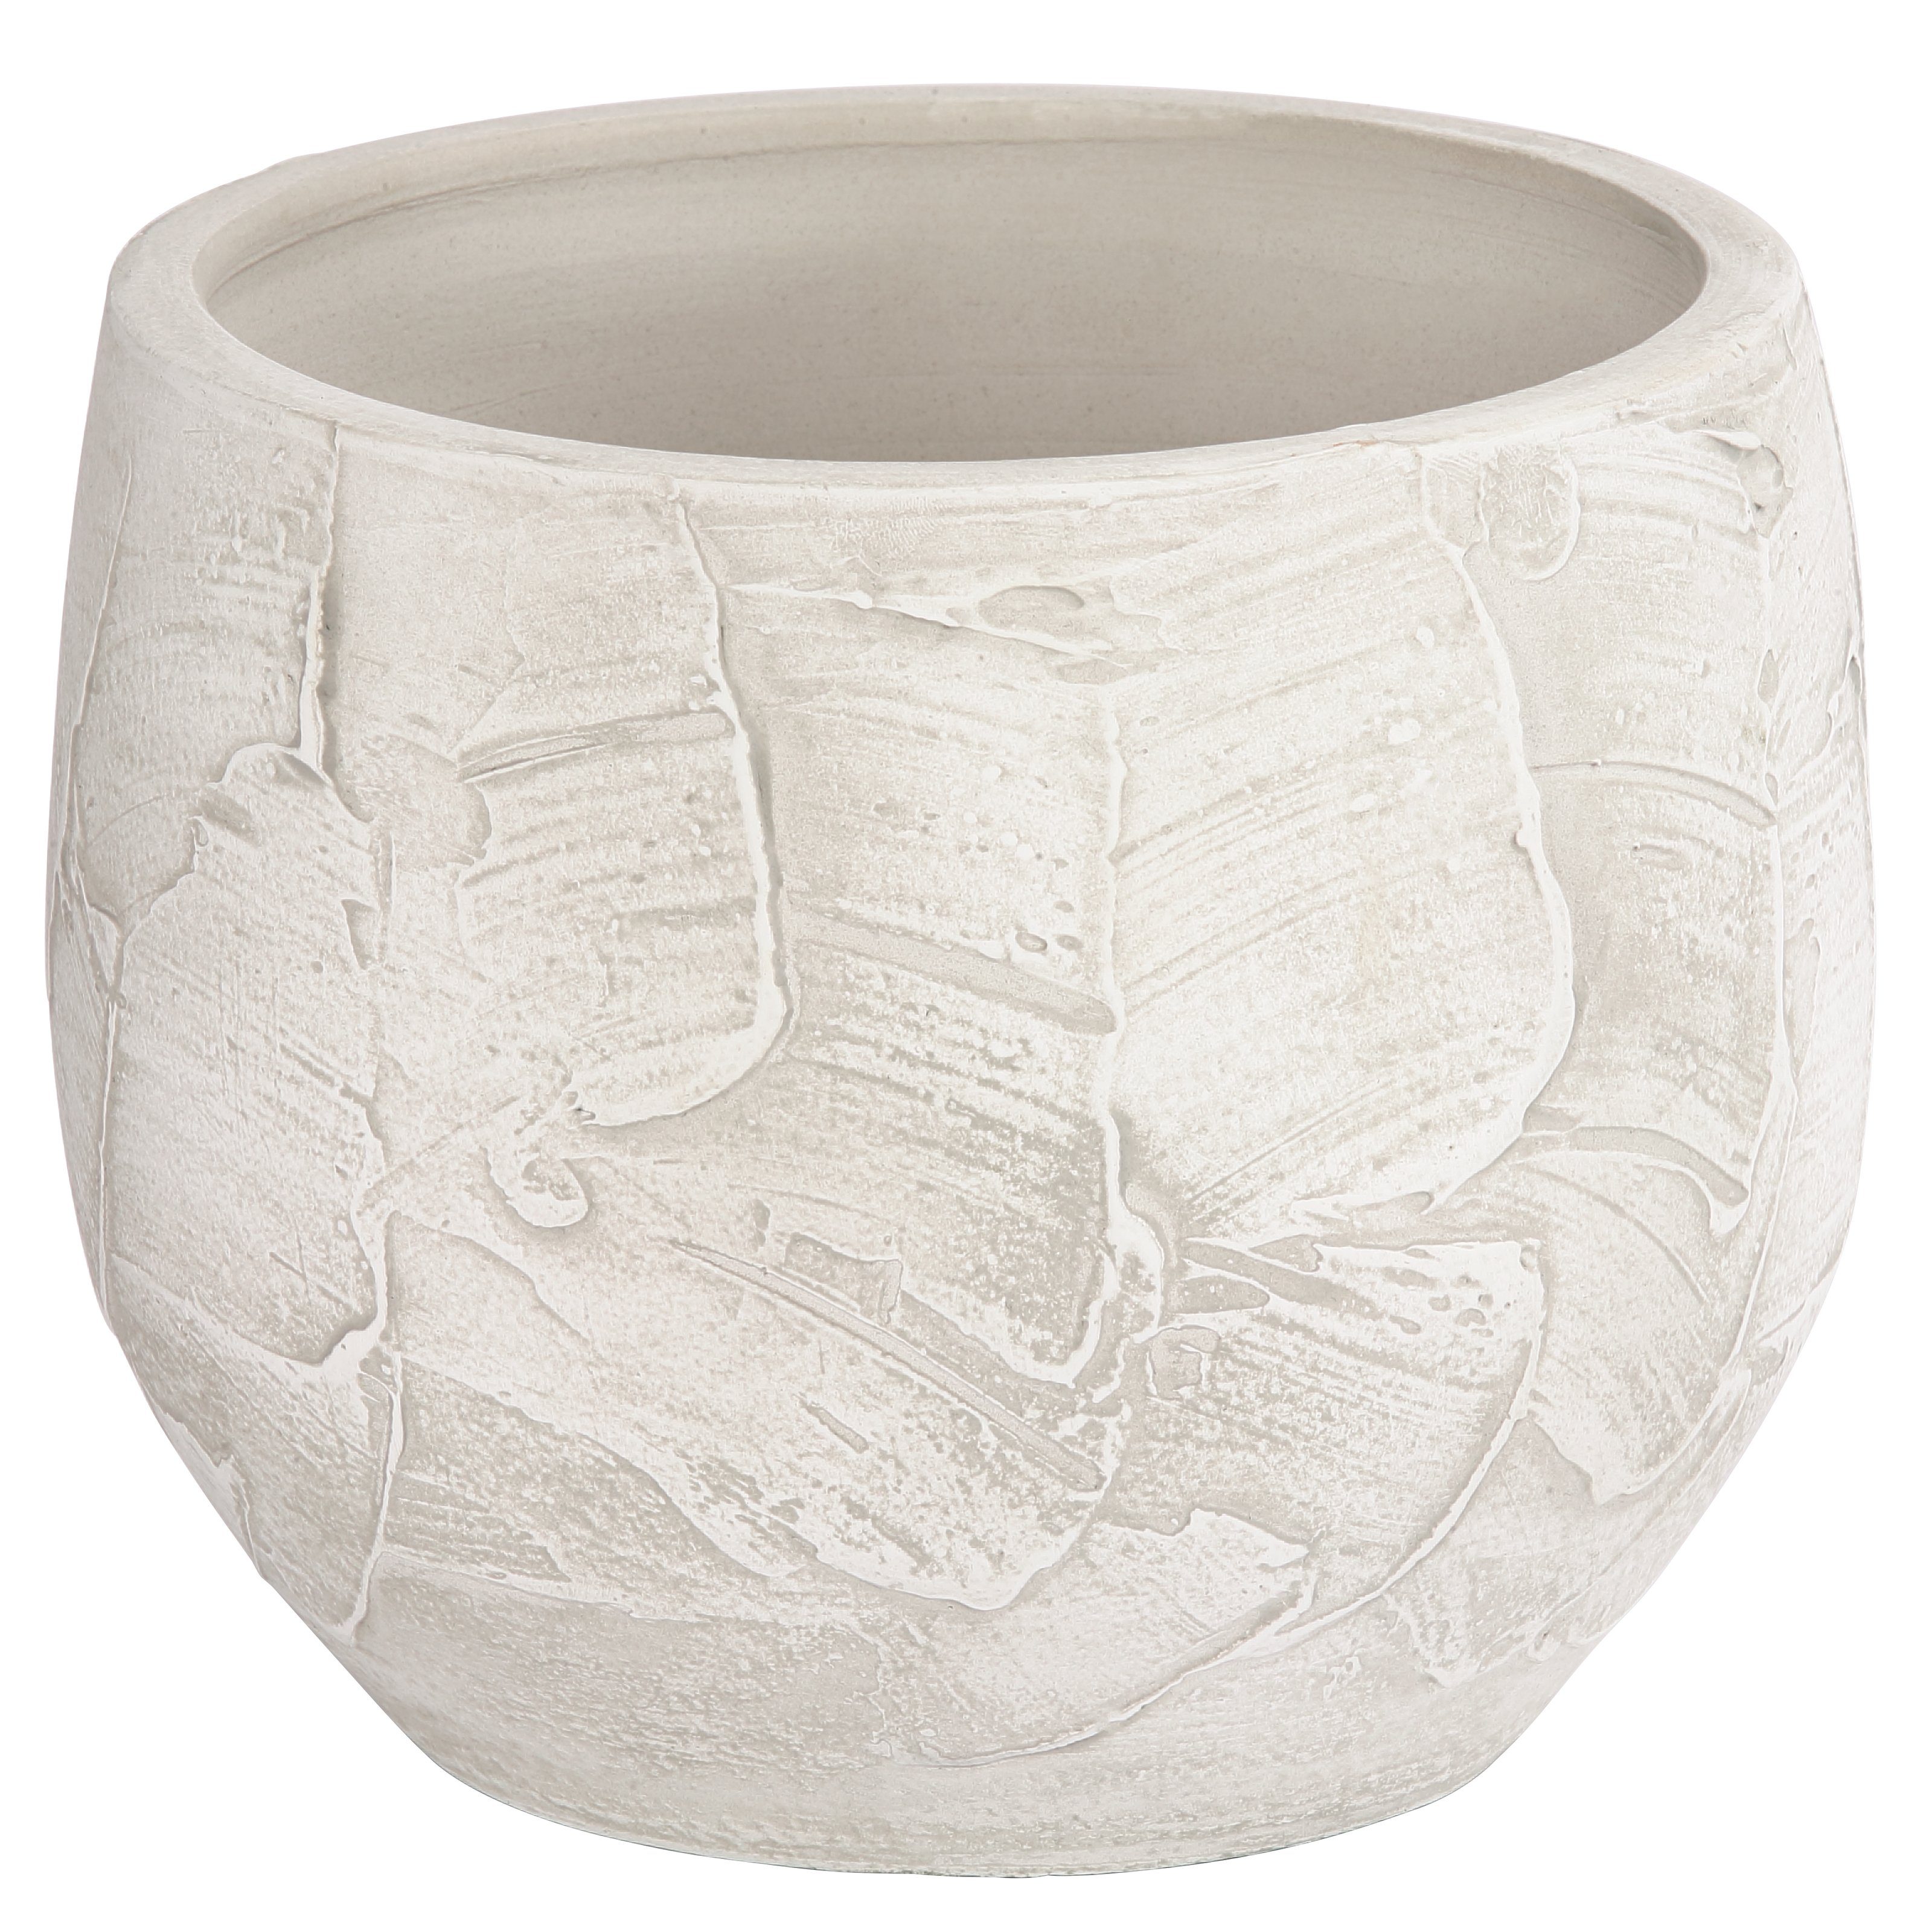 Dehner Übertopf Alessio, aus hochwertiger Keramik, bauchige Form